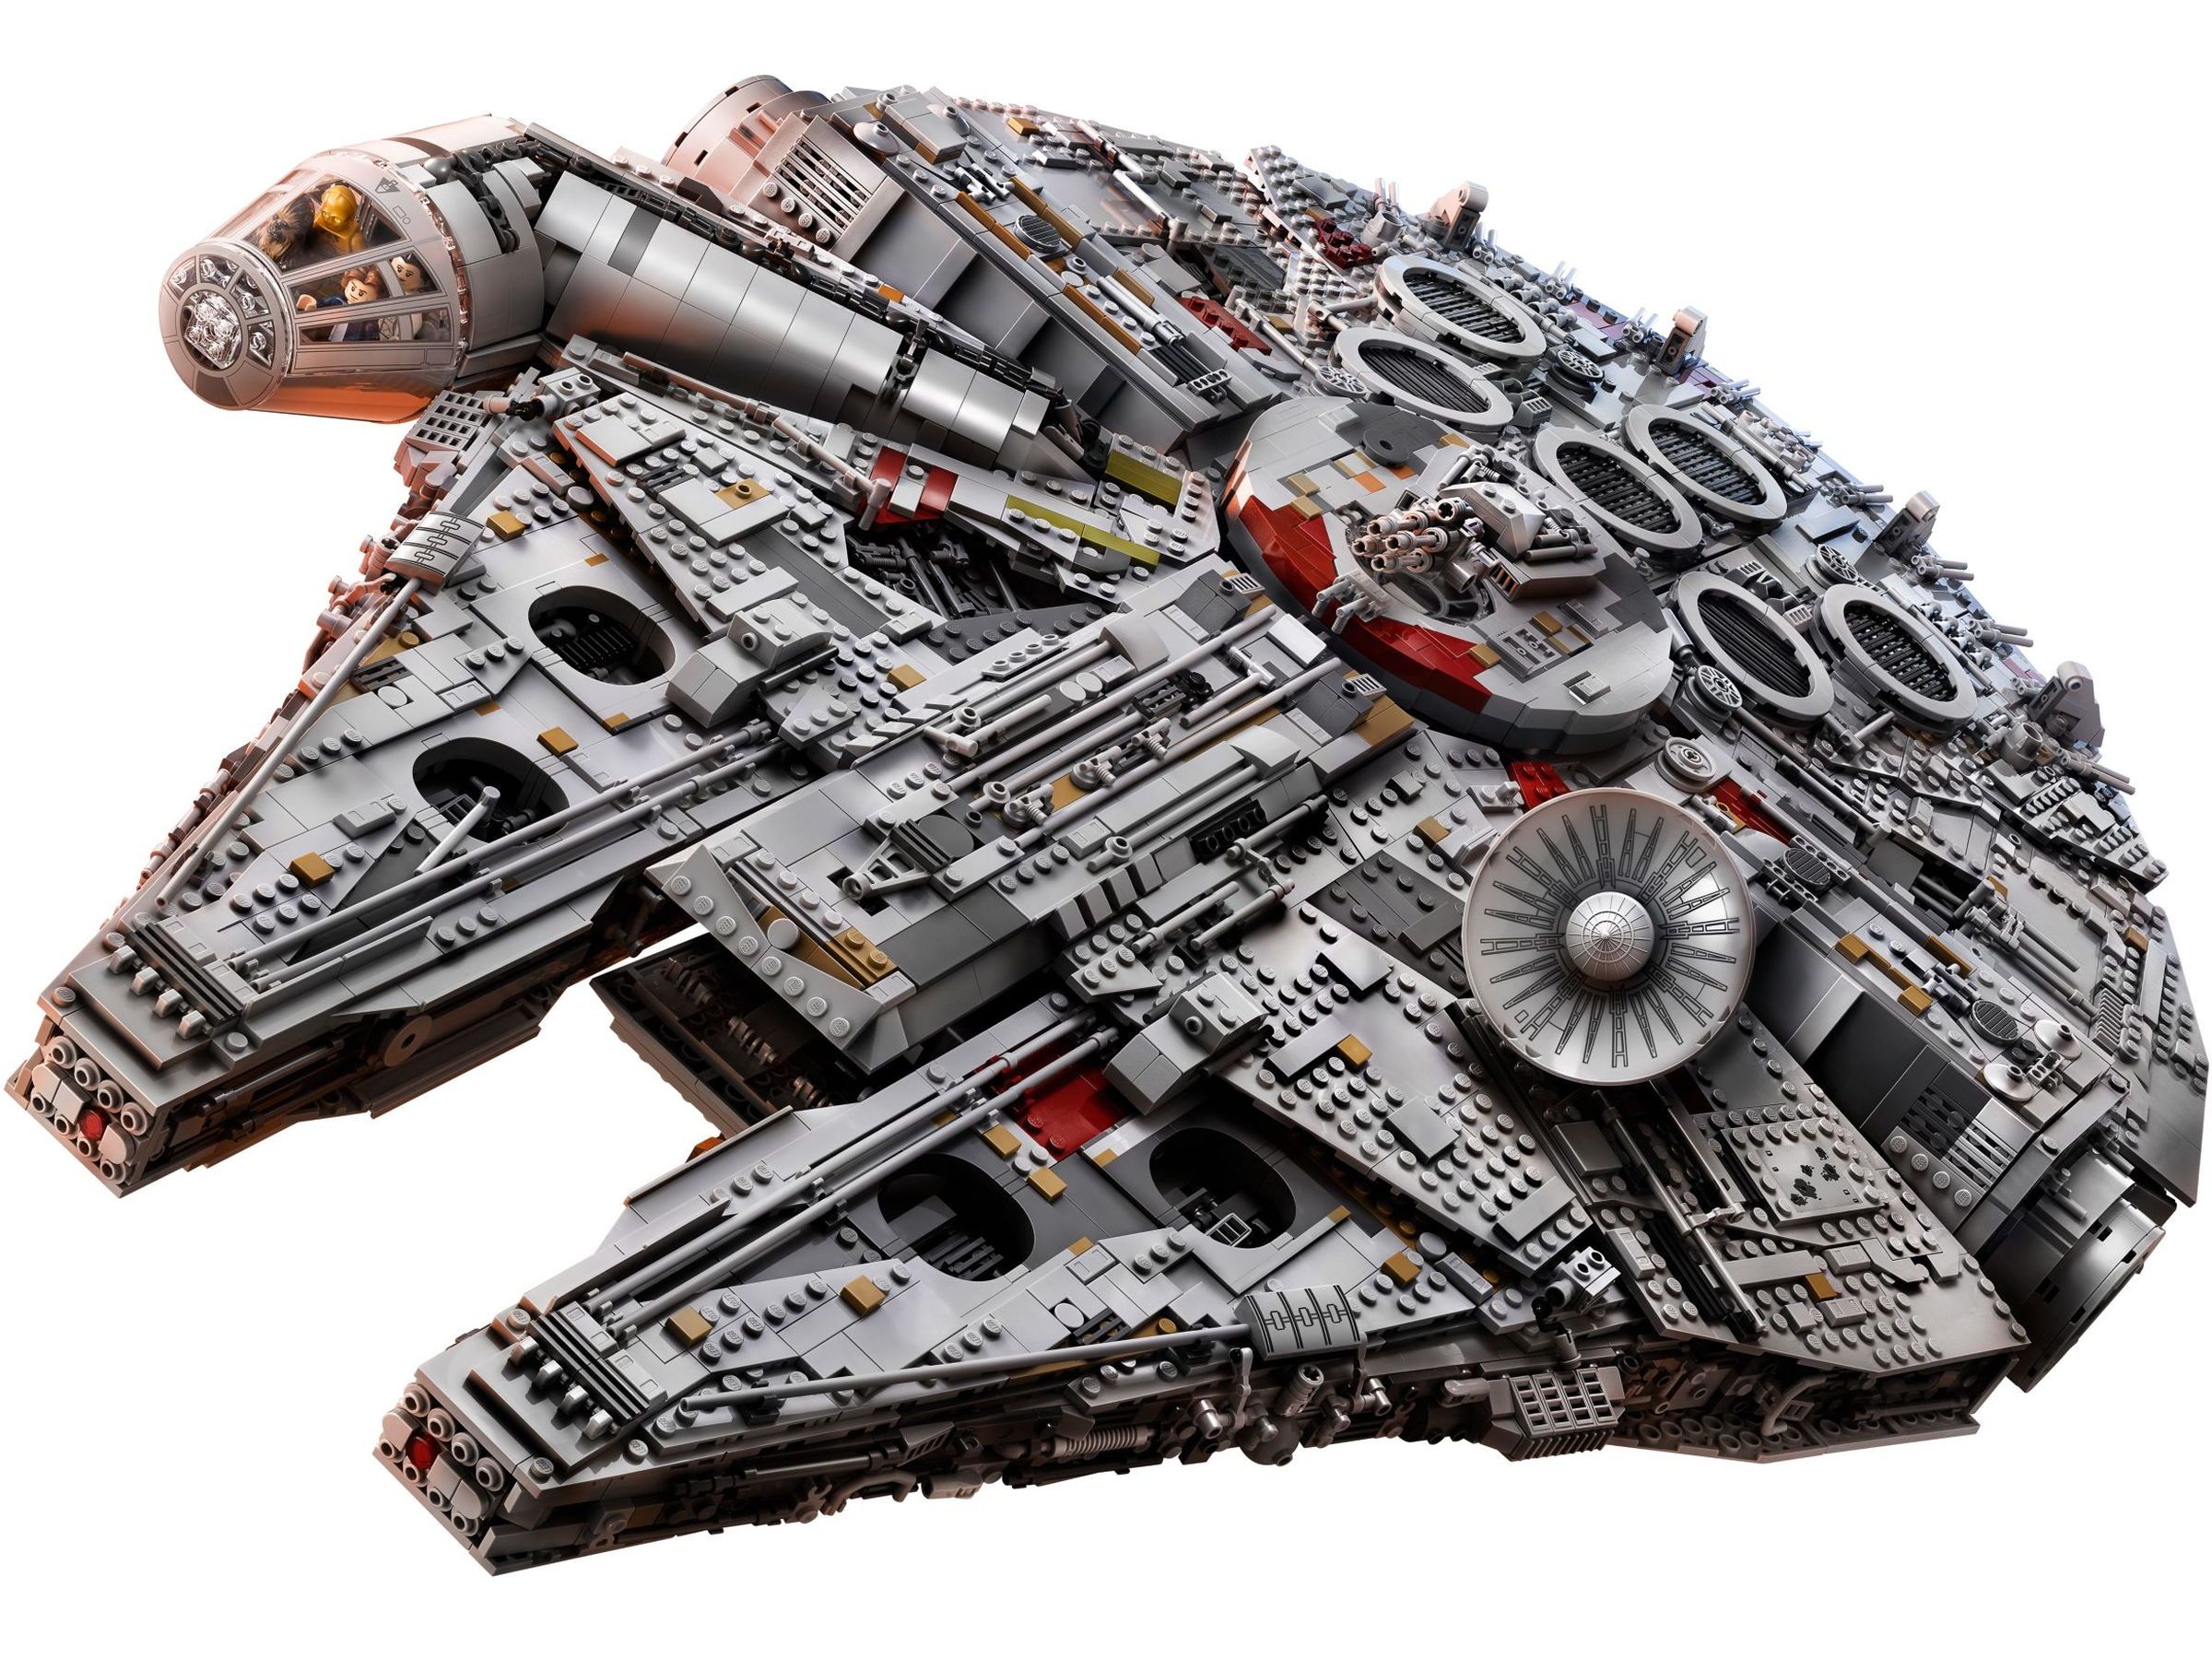 LEGO - STAR WARS - Millennium Falcon™ - 75192